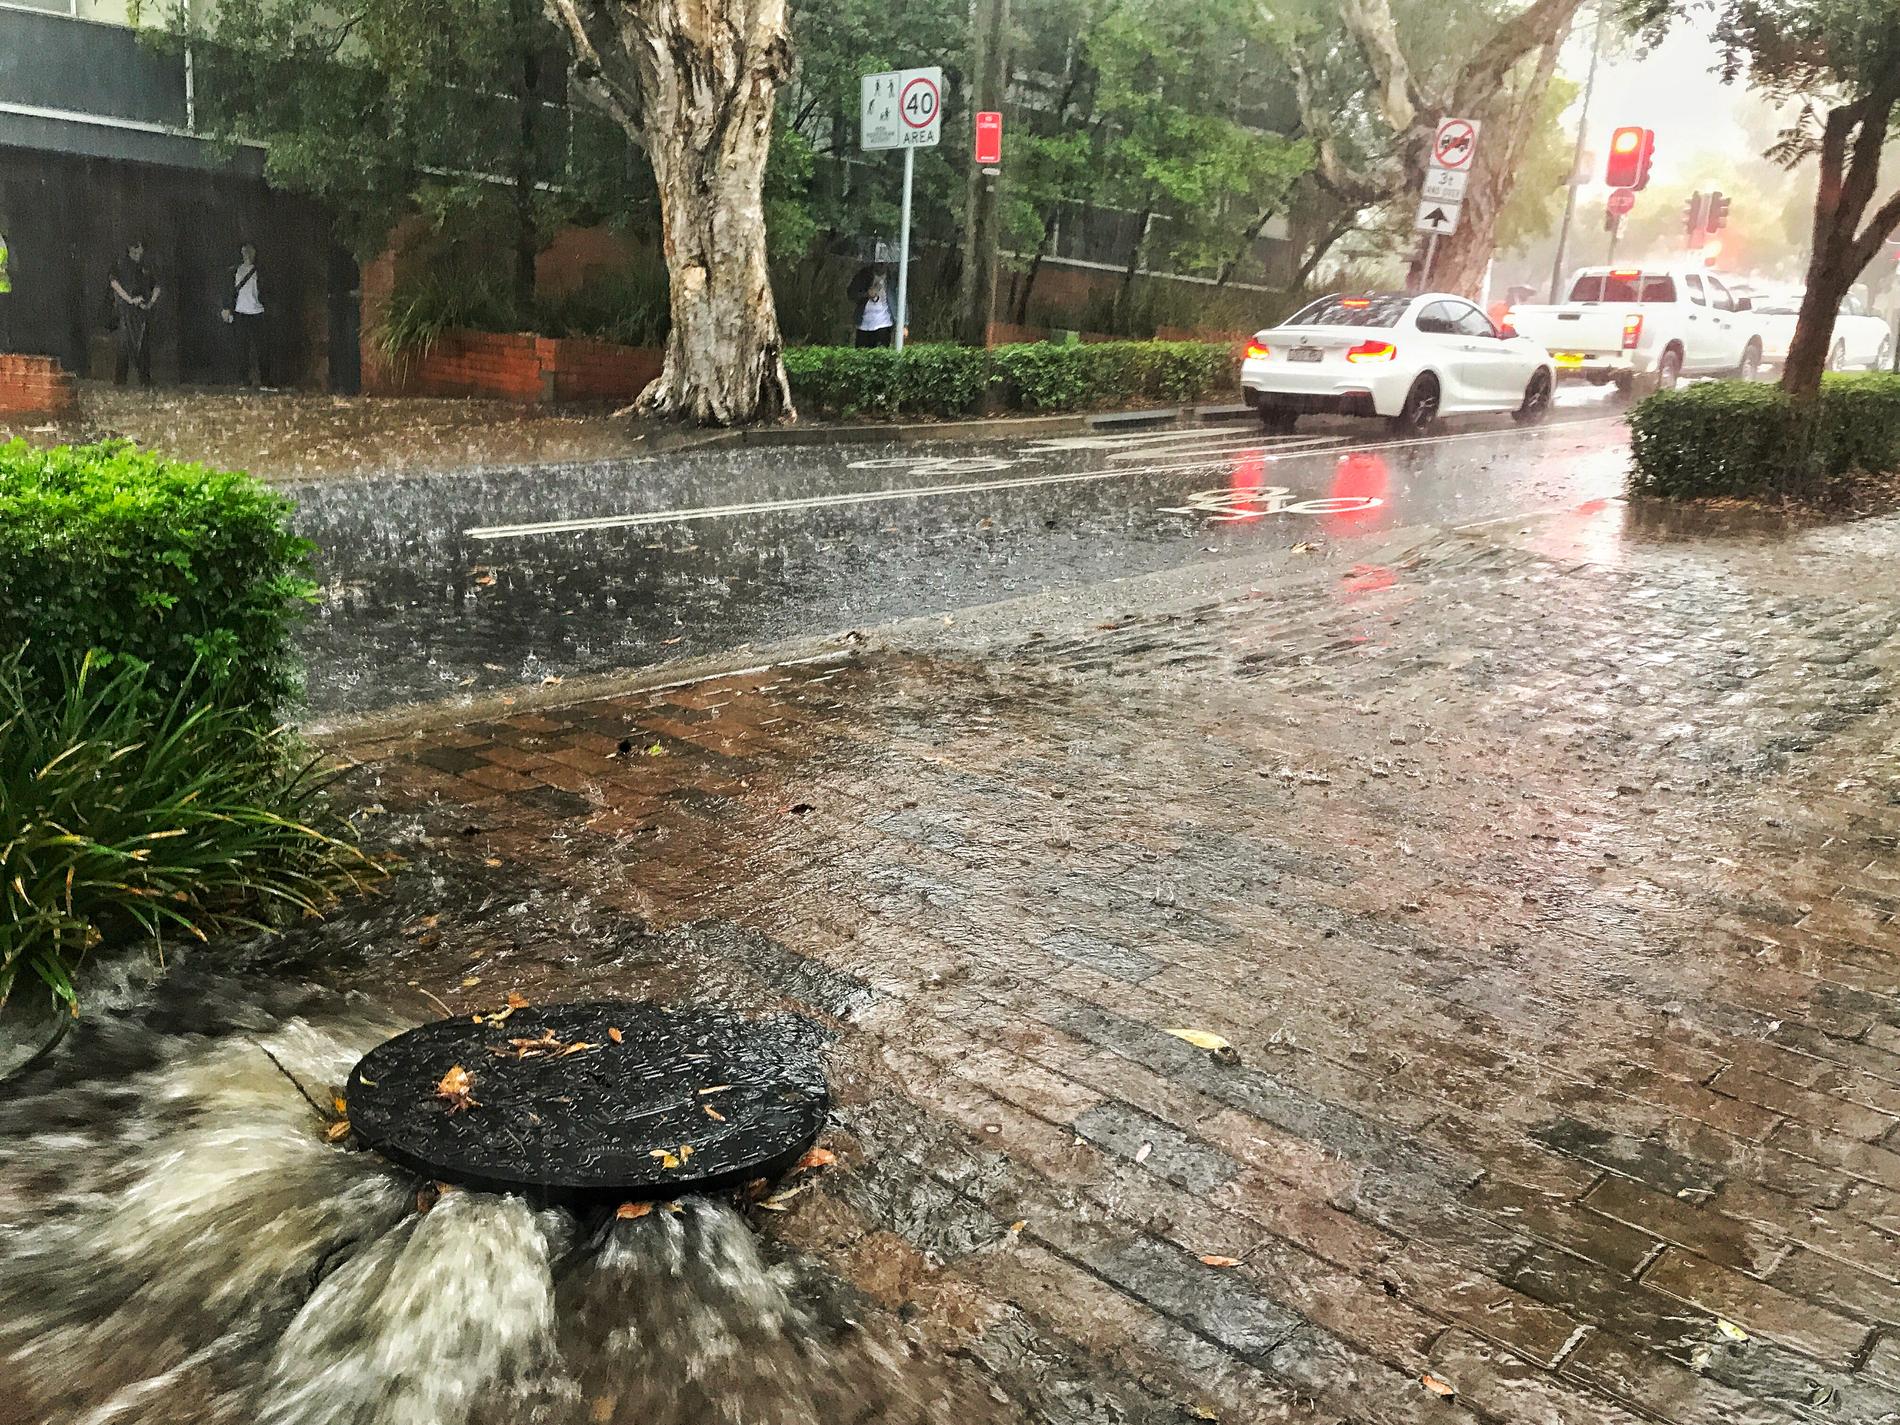 Regn har dragit in över delar av Australien, vilket väntas hjälpa till i släckningsarbetet för de omfattande terrängbränderna.